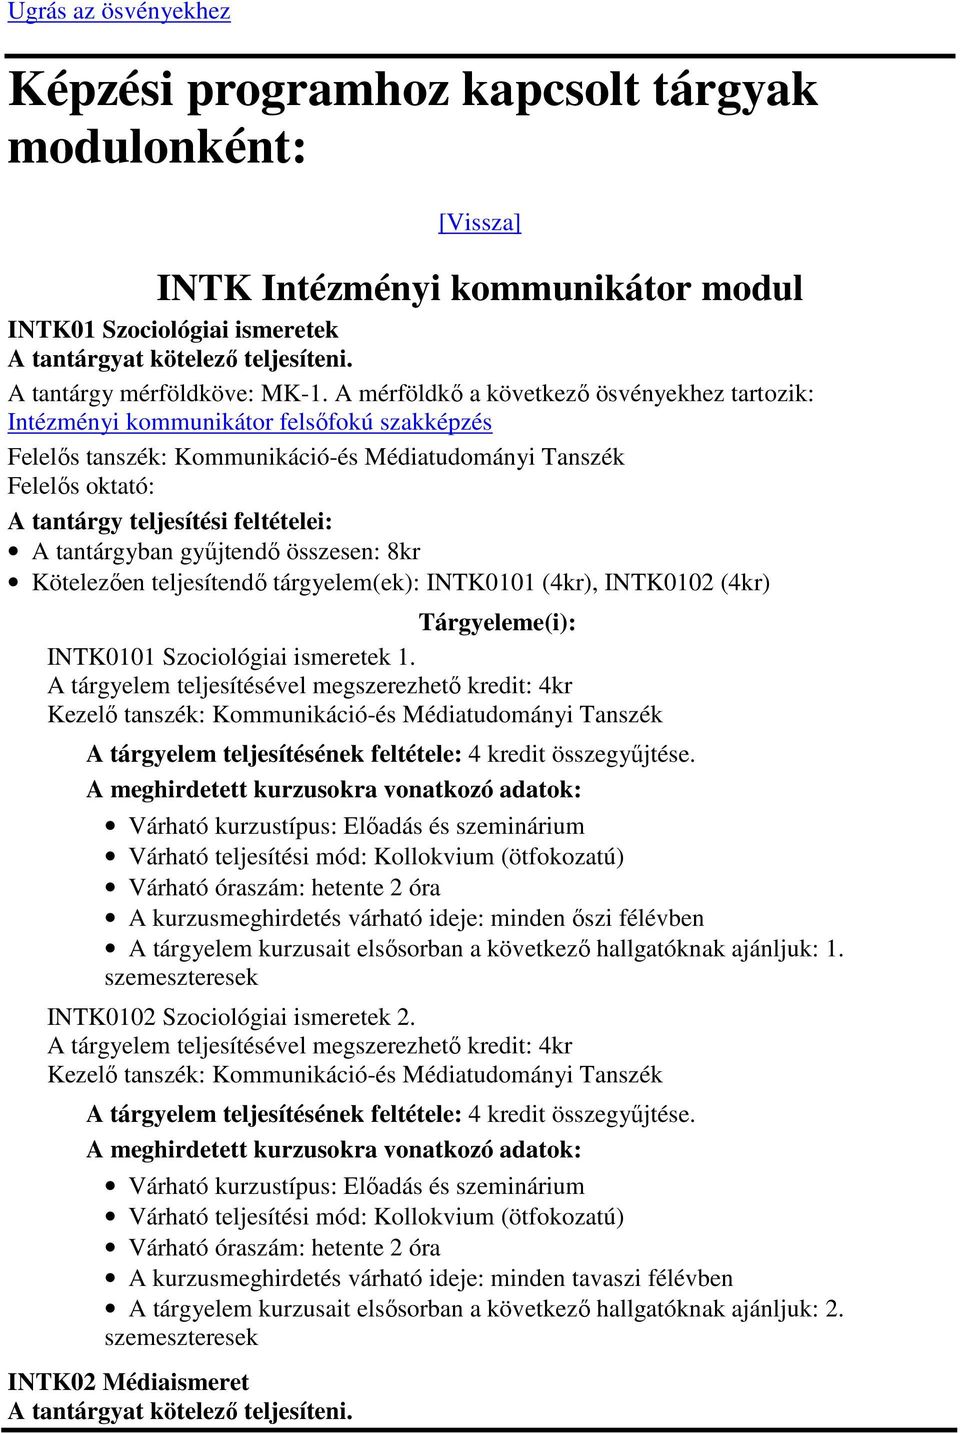 INTK0102 (4kr) INTK0101 Szociológiai ismeretek 1. A tárgyelem kurzusait elsősorban a következő hallgatóknak ajánljuk: 1.